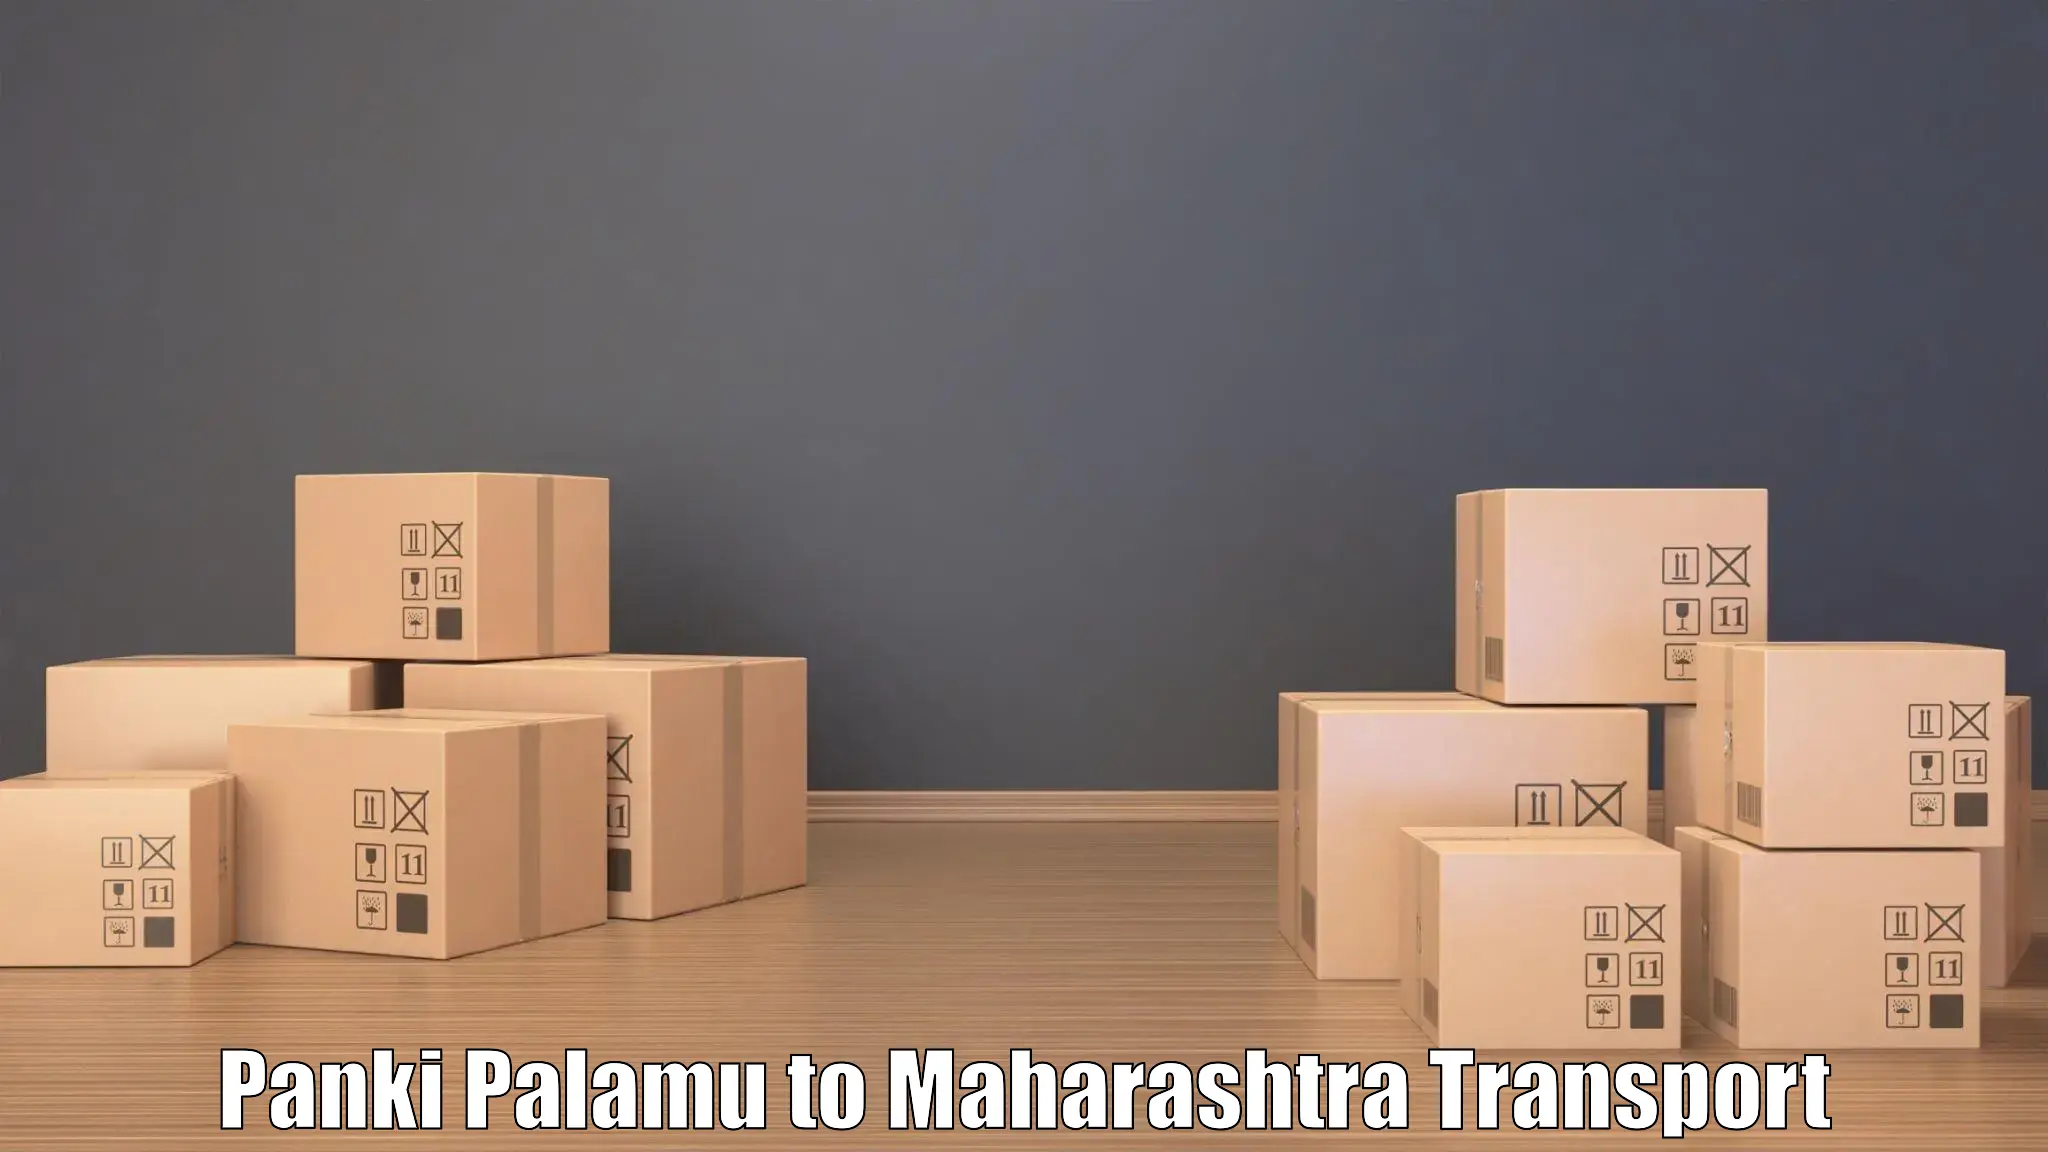 Express transport services Panki Palamu to Jalna